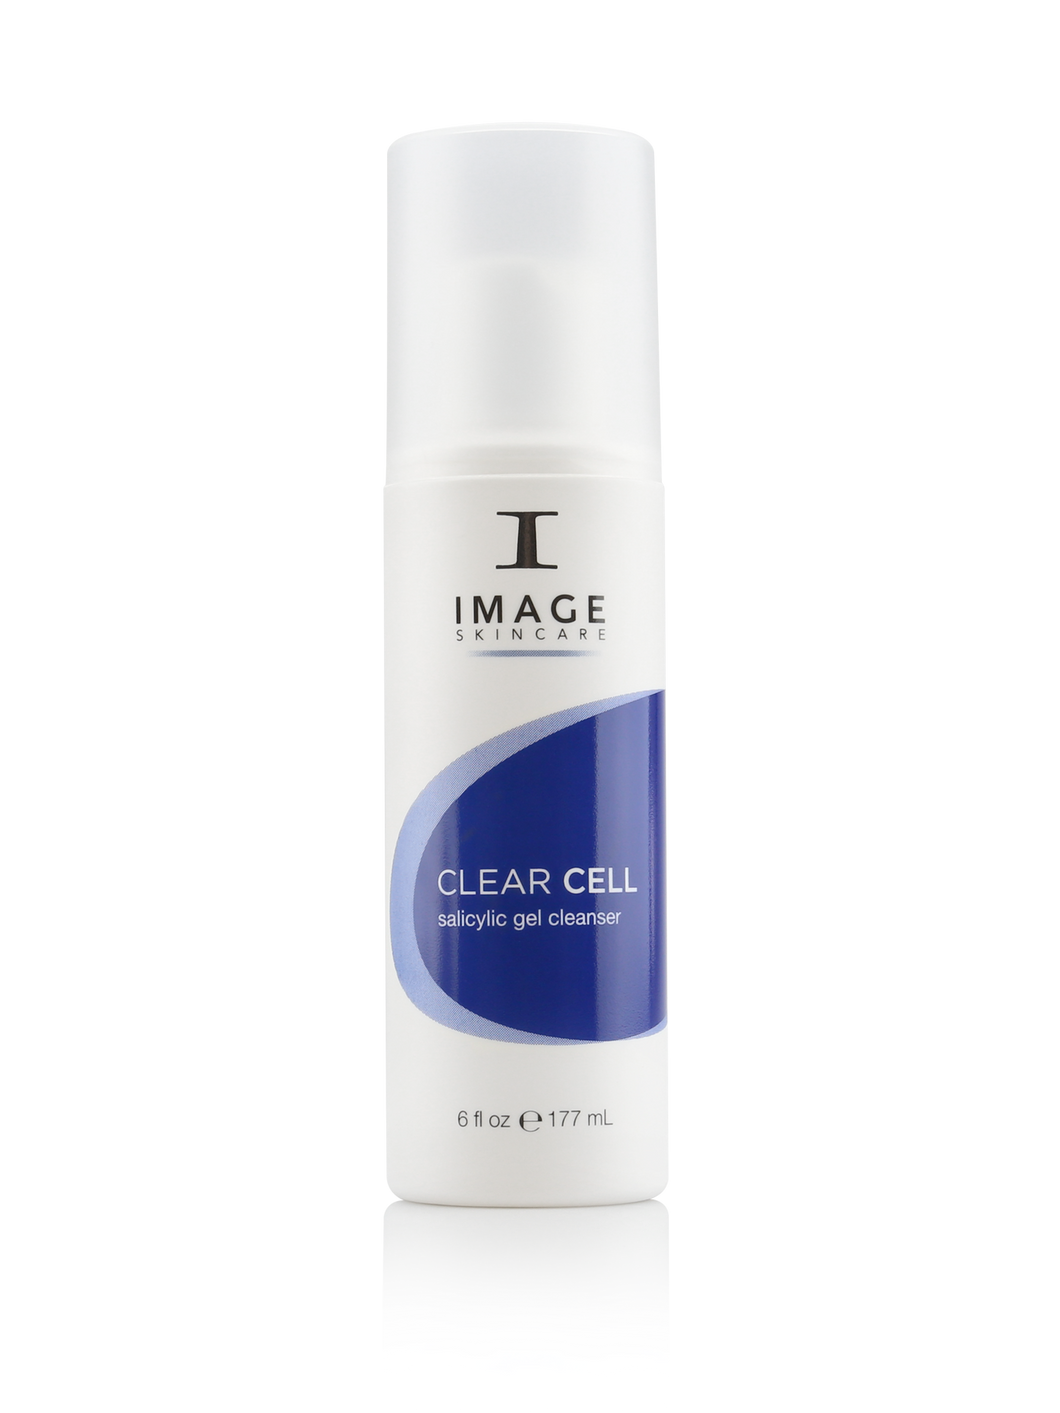 CLEAR CELL salicylic gel cleanser 6 fl oz/ 177 mL